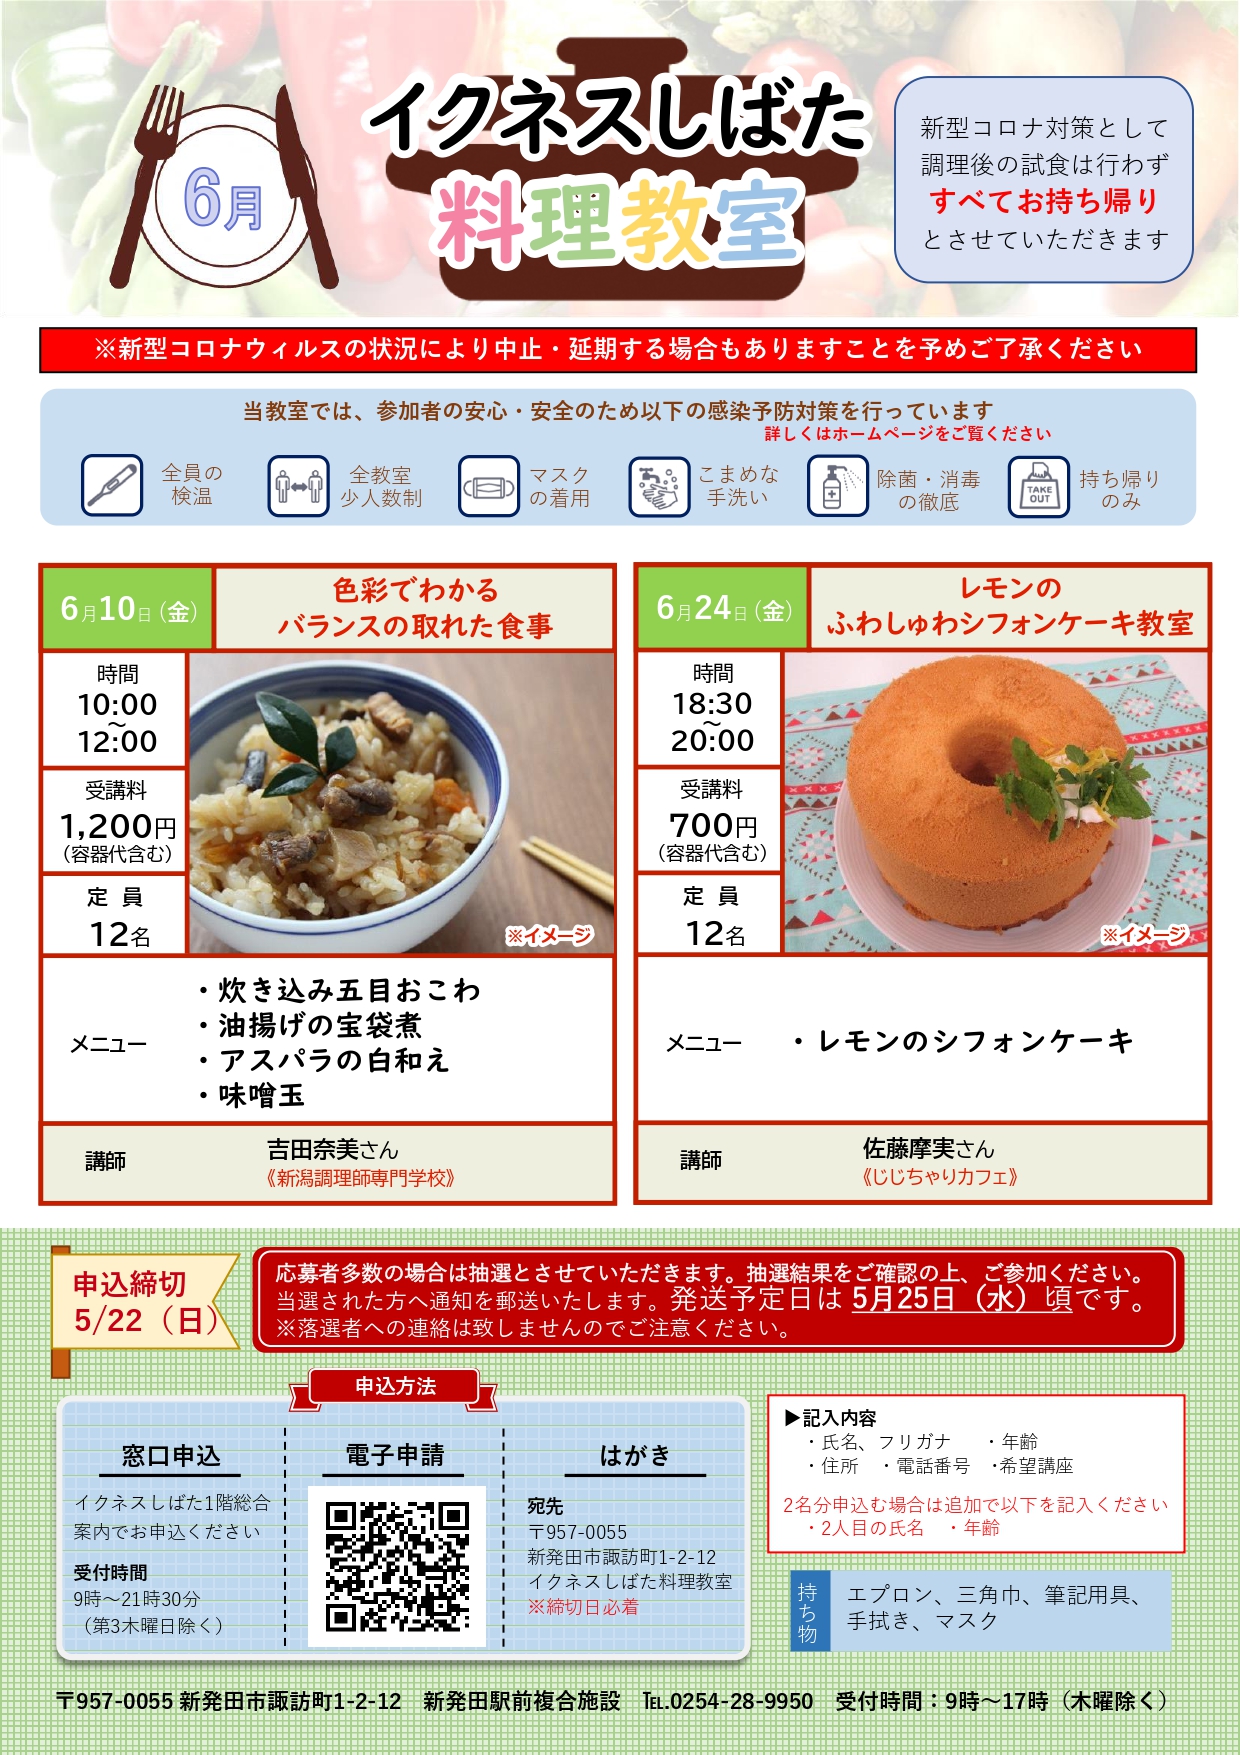 6月料理教室チラシ_page-0001.jpg